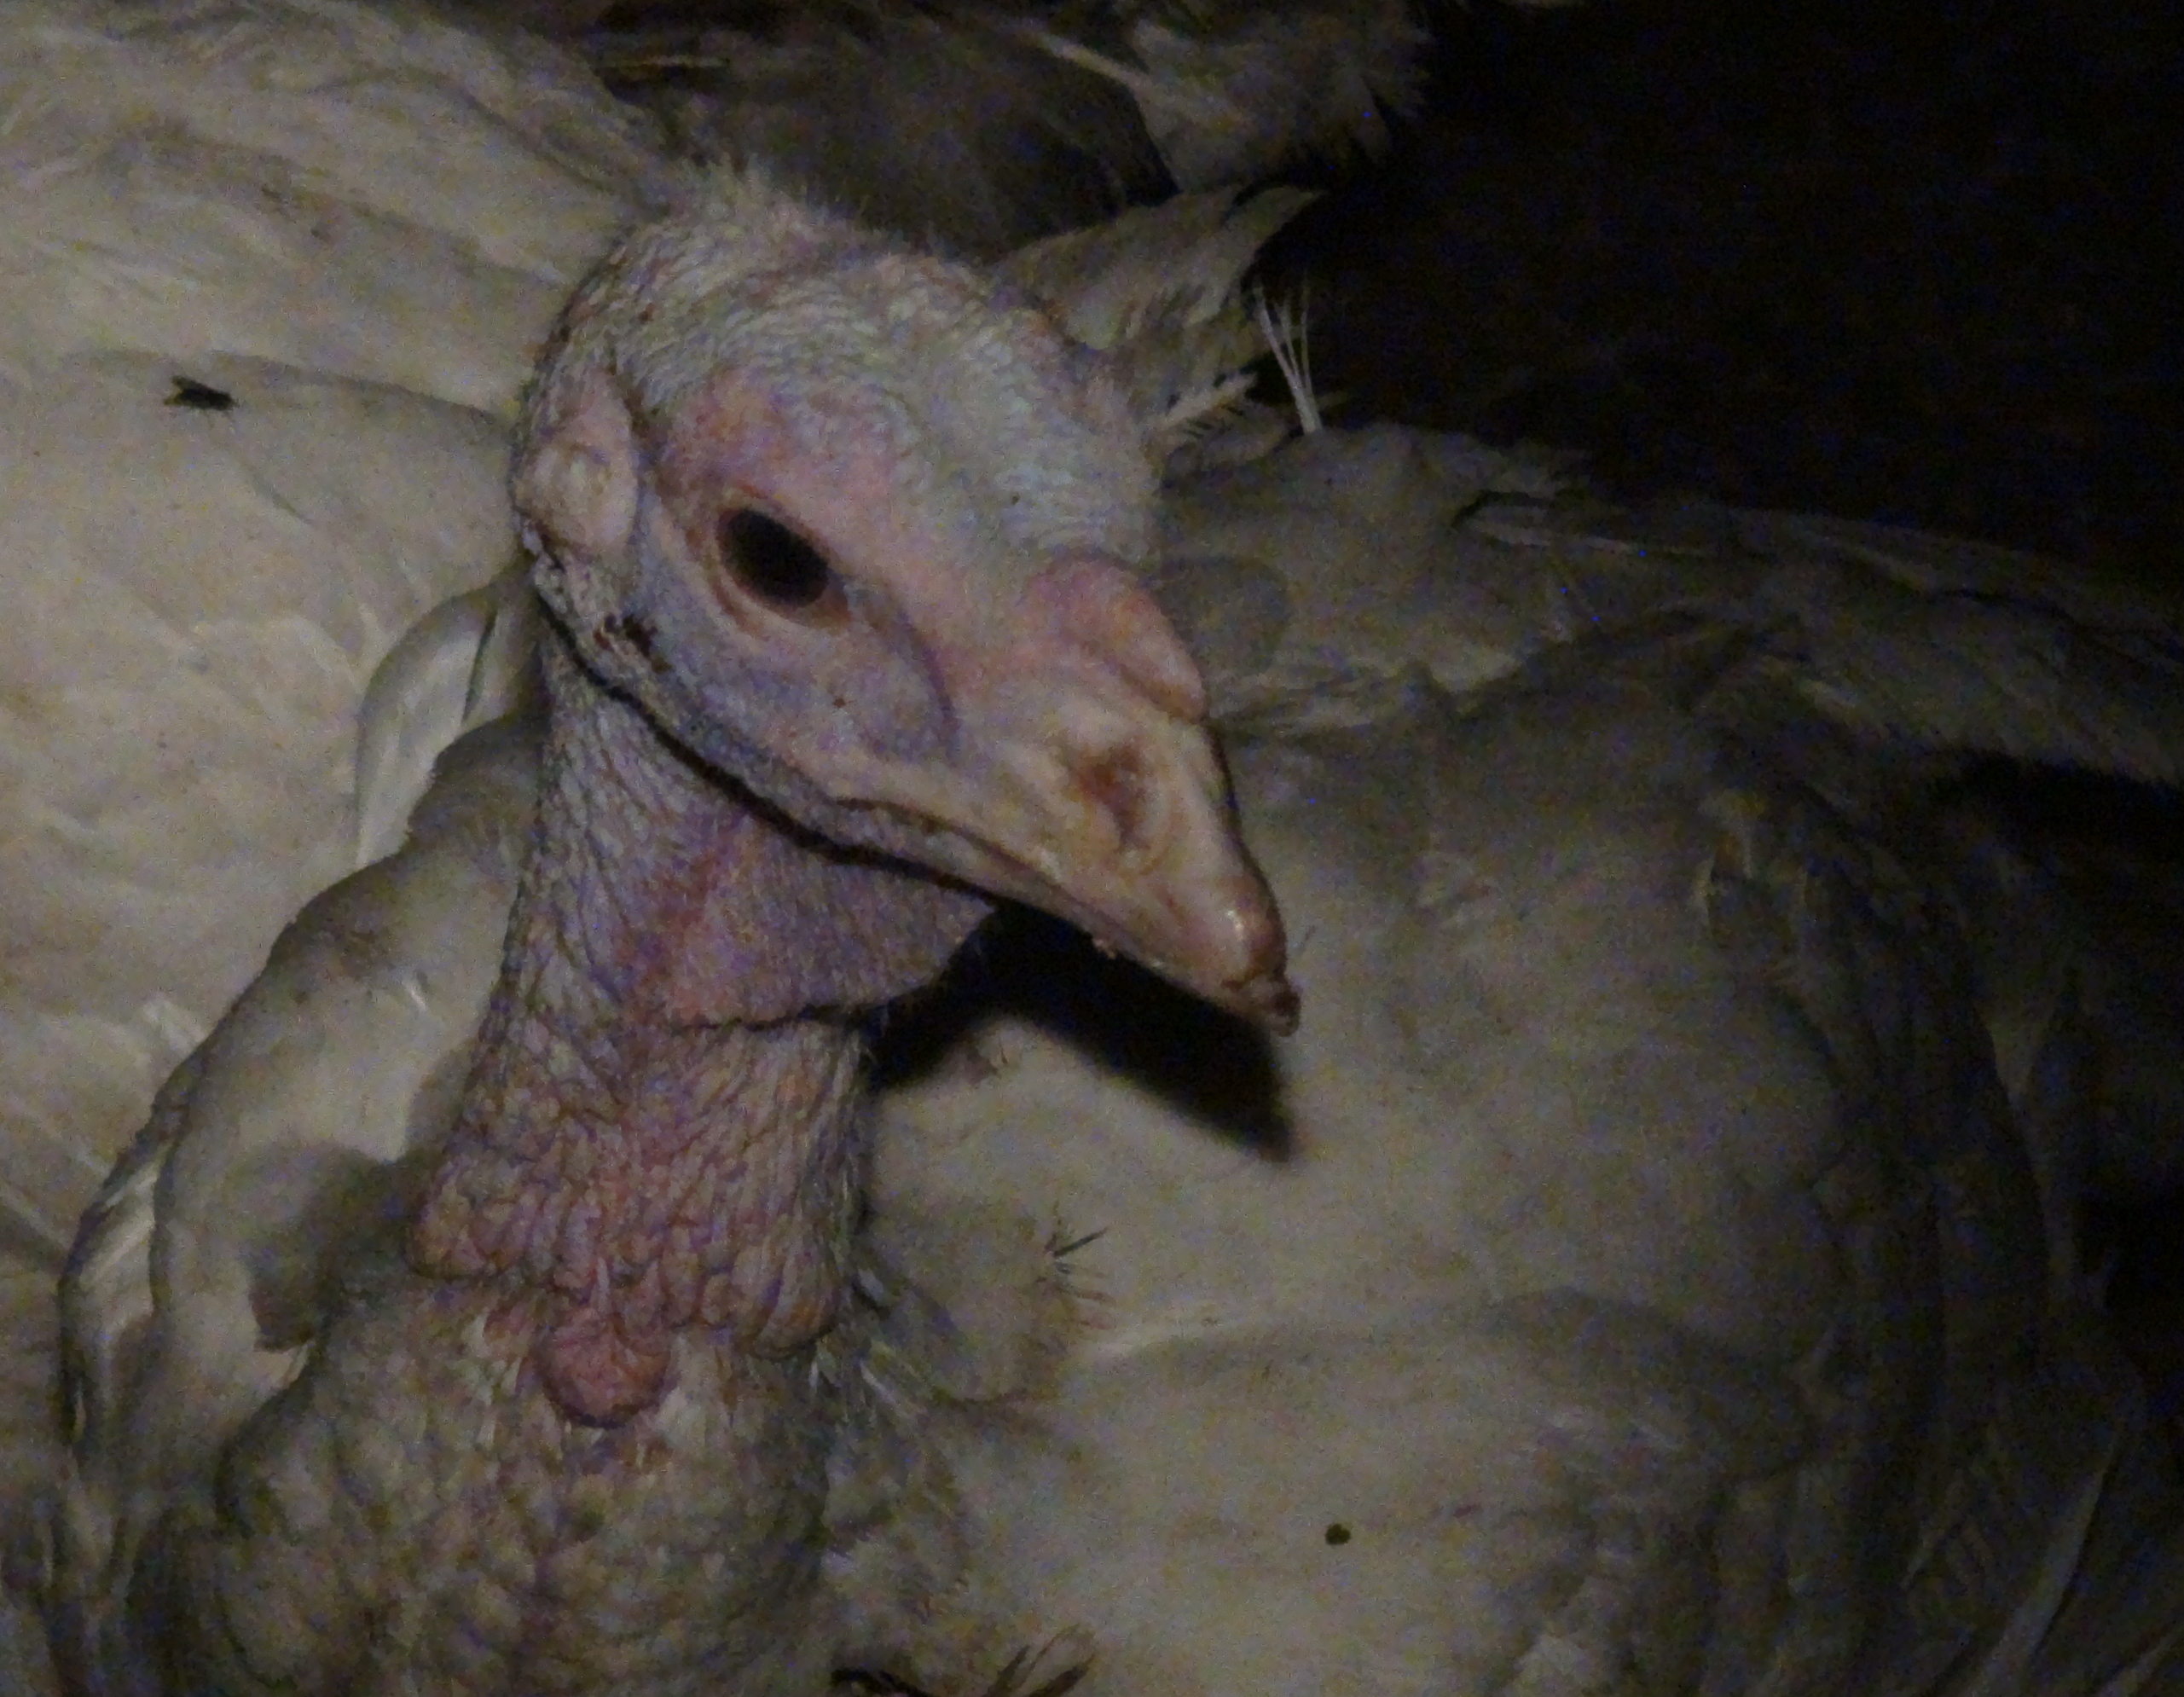 Turkey on Canadian factory farm